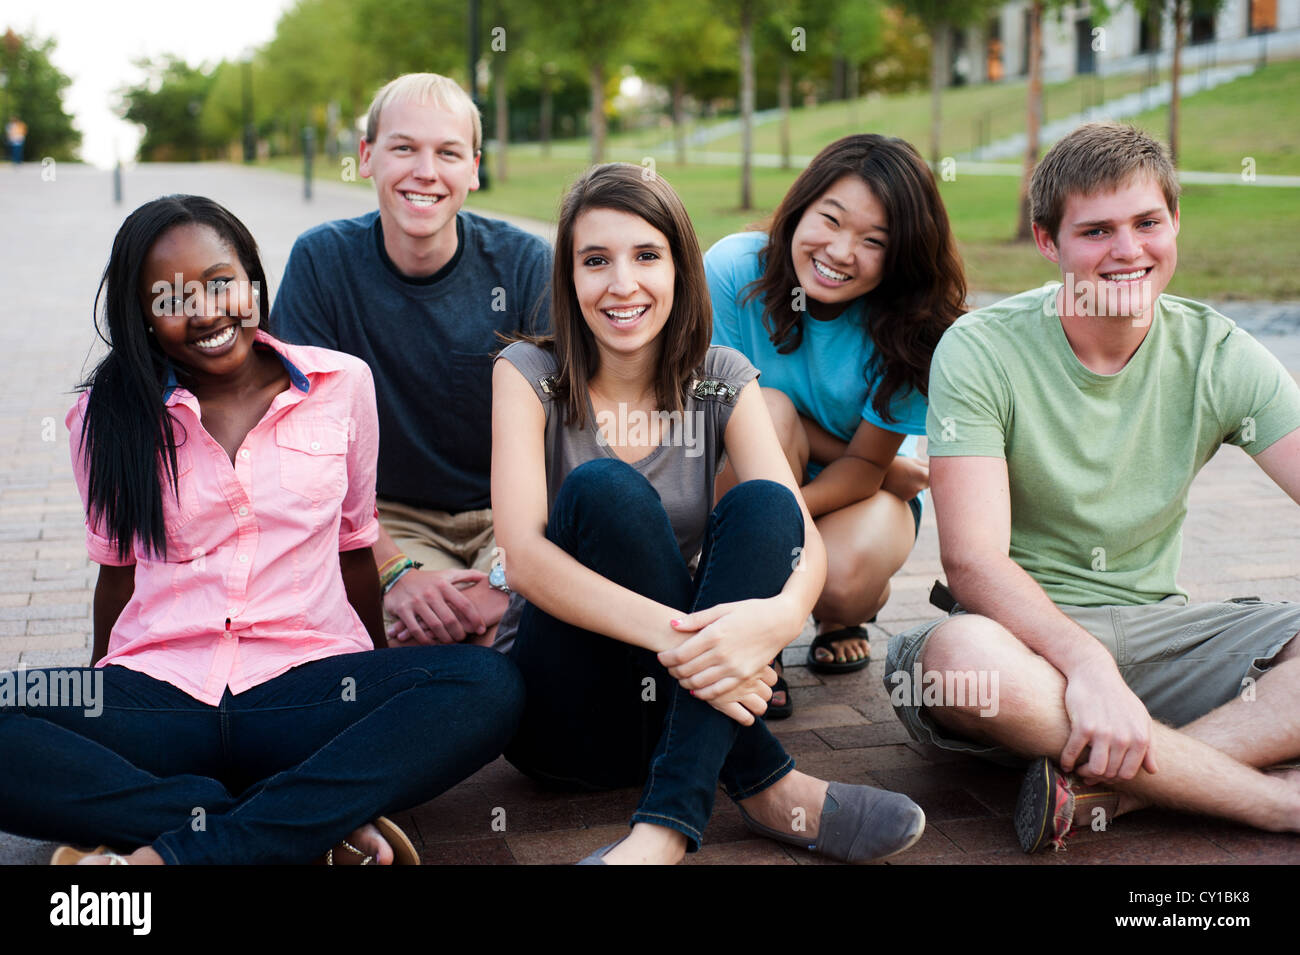 Groupe d'amis à l'extérieur smiling together Banque D'Images